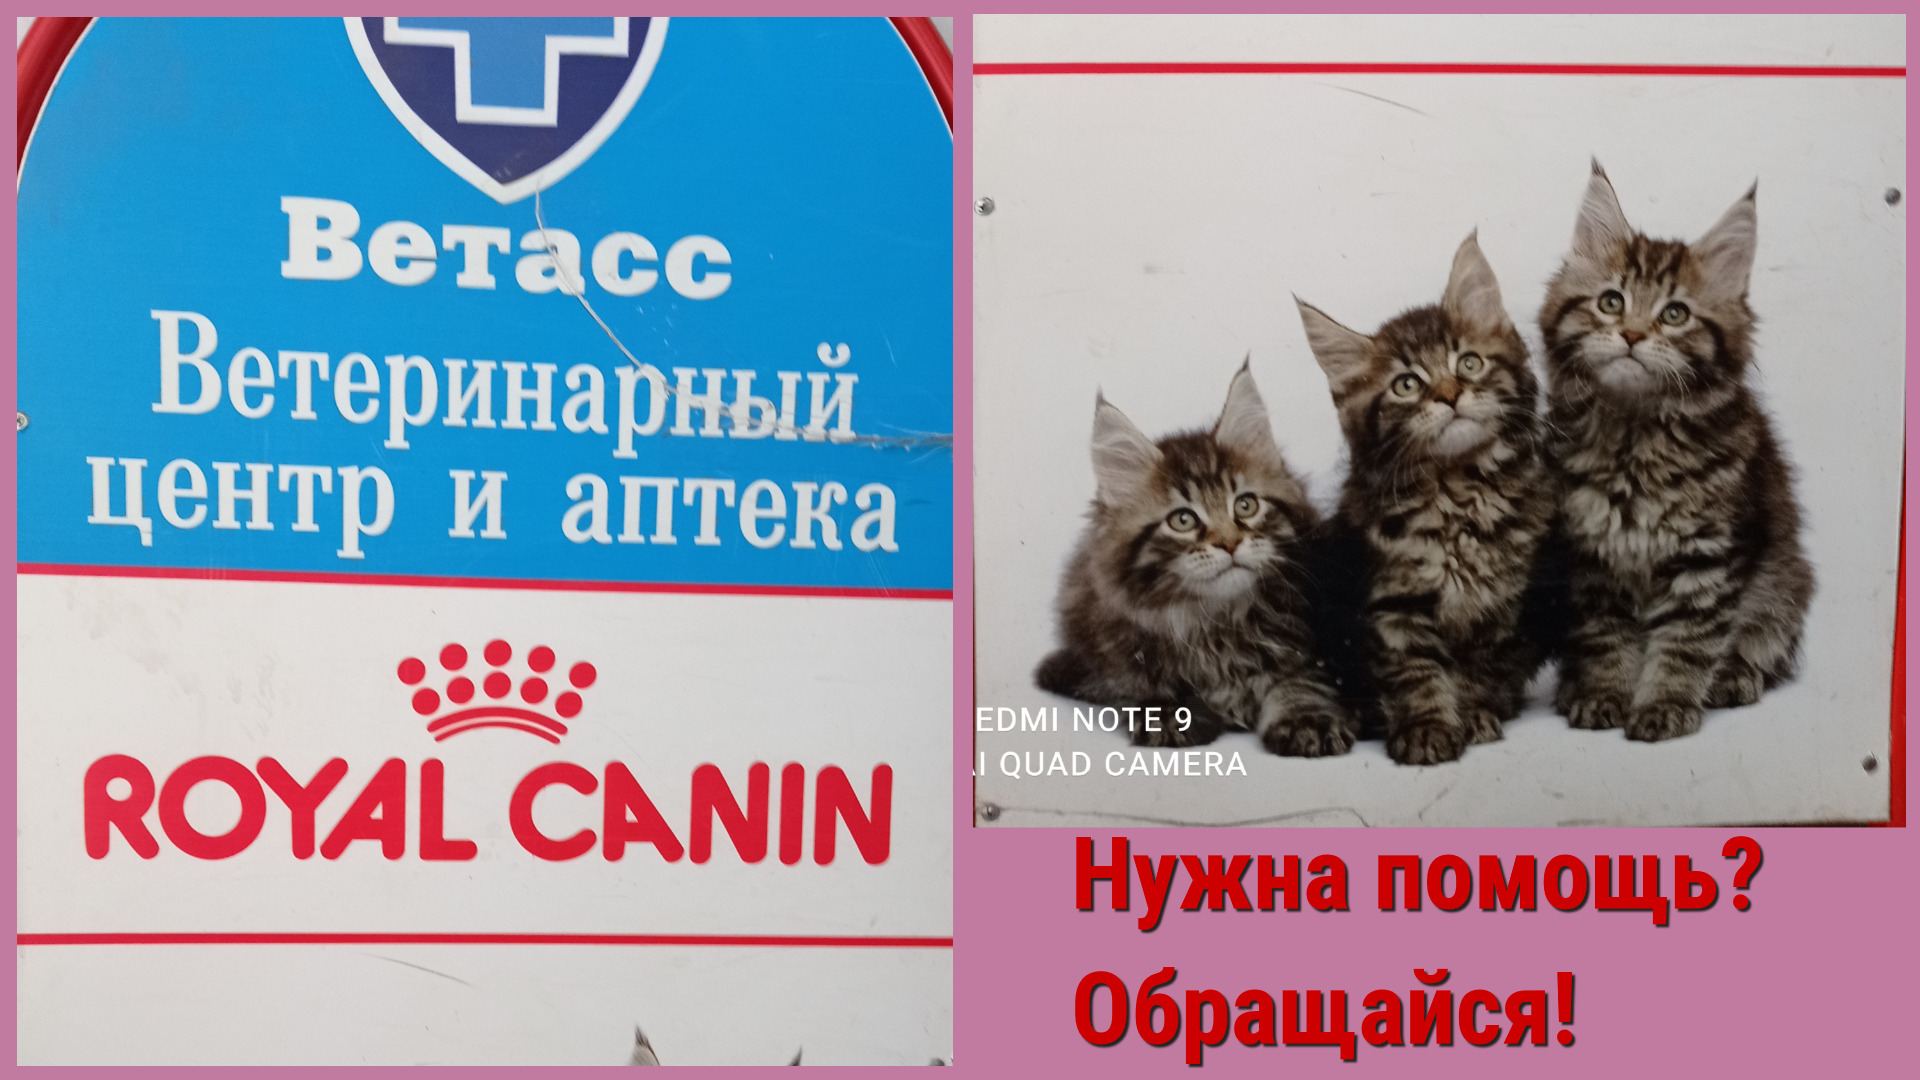 Ветеринарная клиника в Иваново "Ветасс", услуги животным.